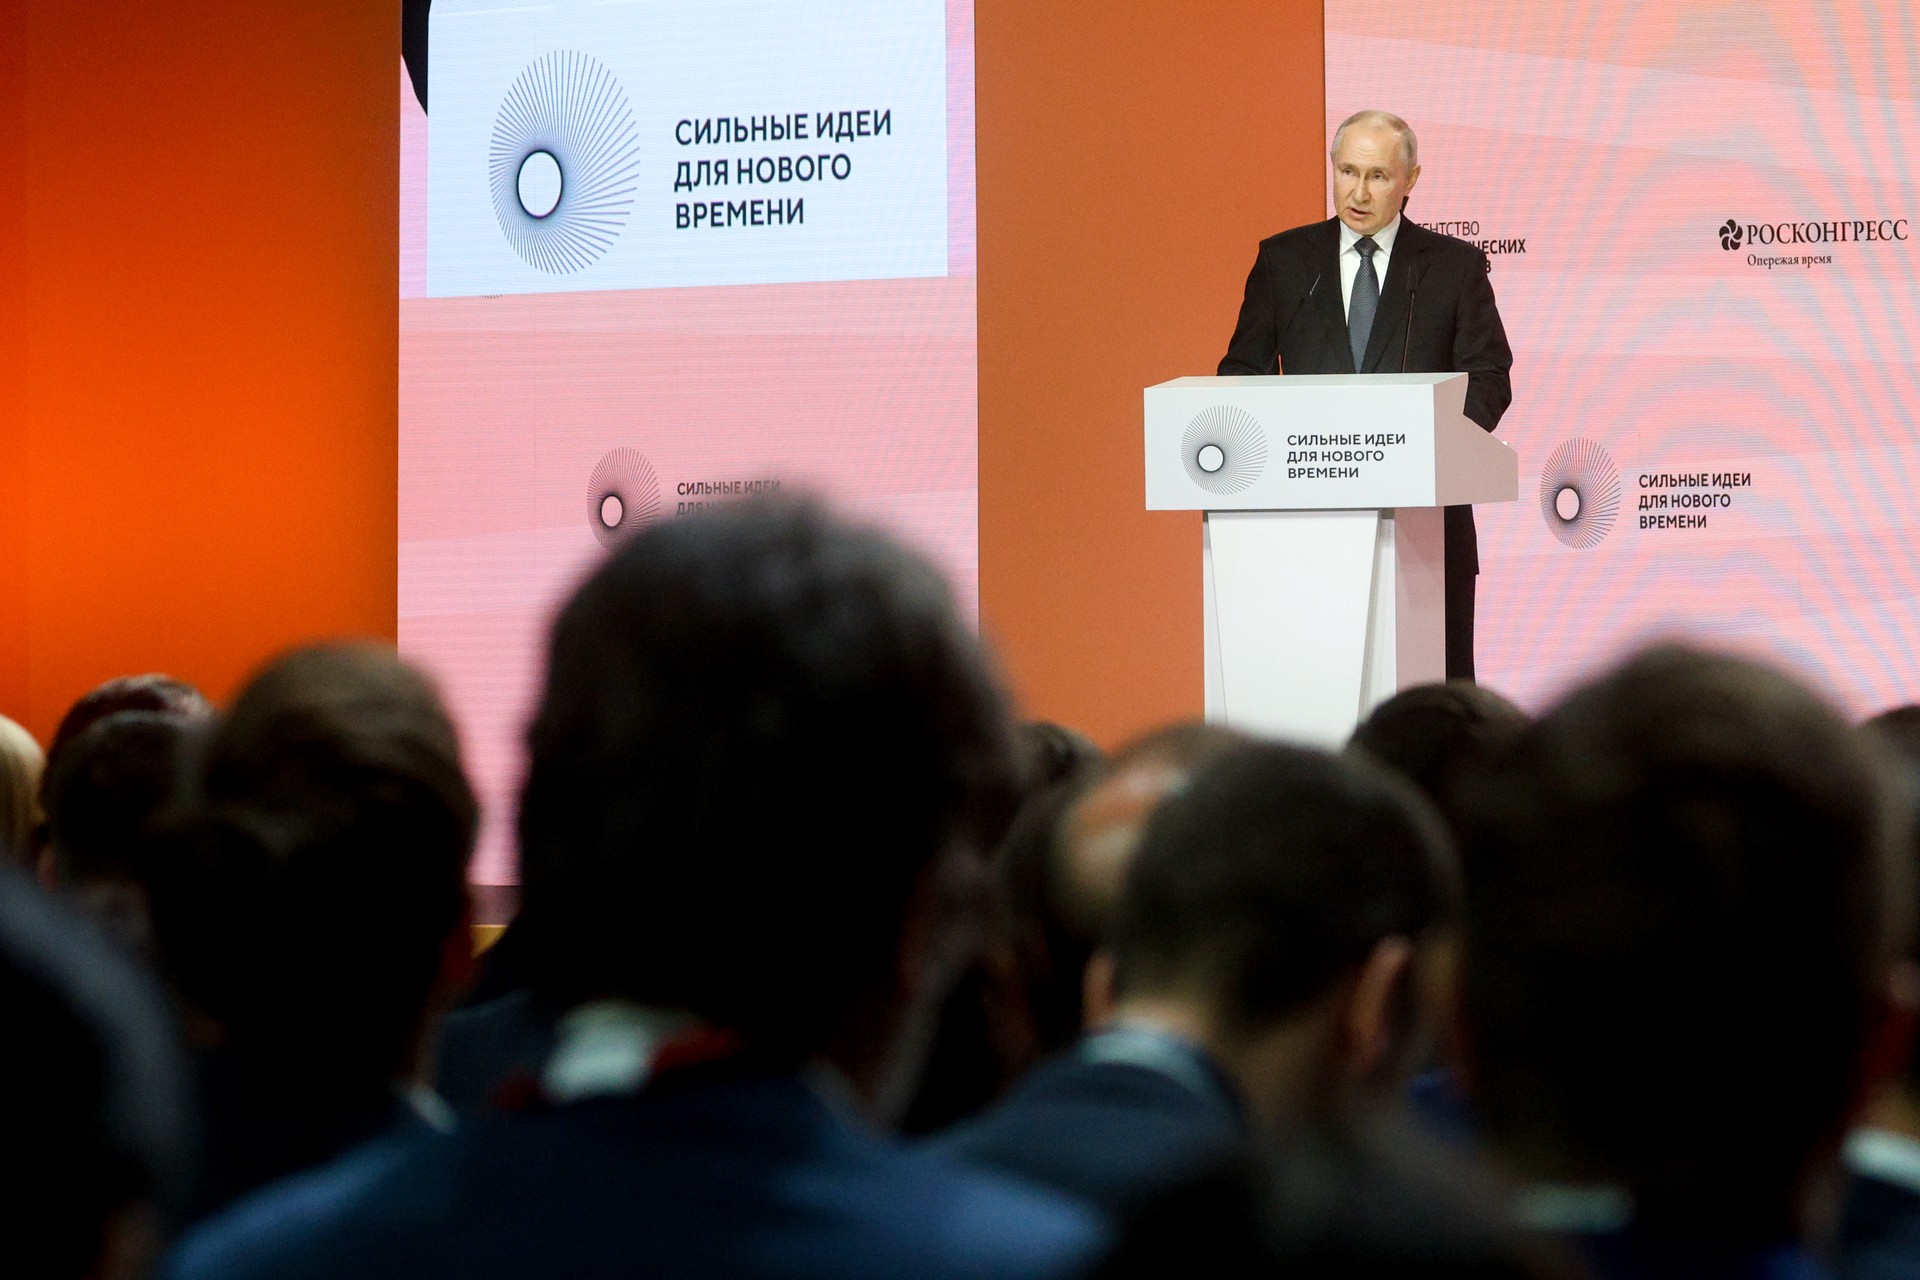 «Жаба на нашей стороне»: Путин, обсуждая экологические проблемы, вспомнил детский мультик 